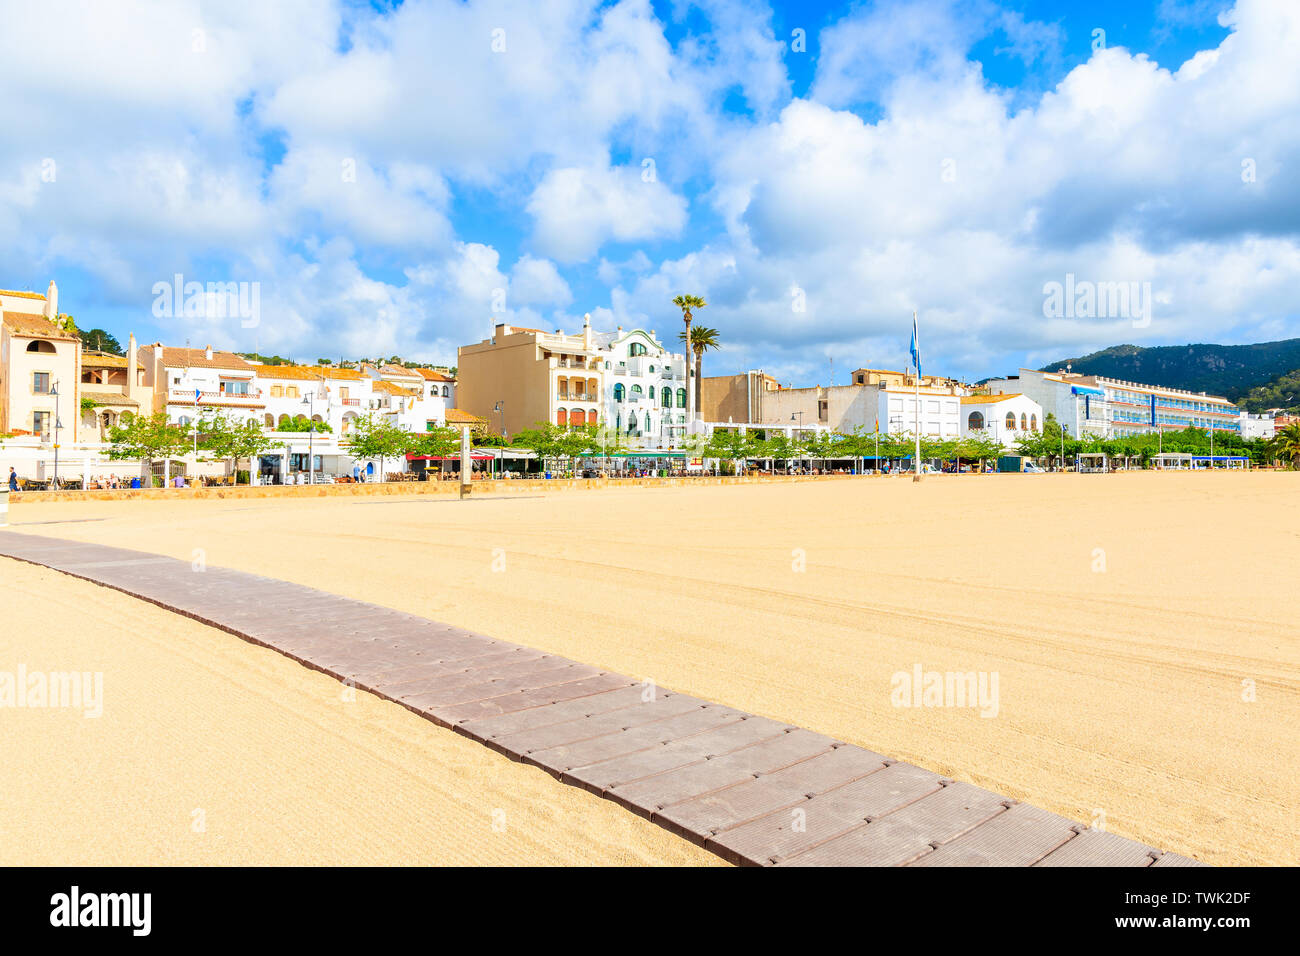 Percorso sulla spiaggia sabbiosa in Tossa de Mar con case colorate in background, Costa Brava, Spagna Foto Stock